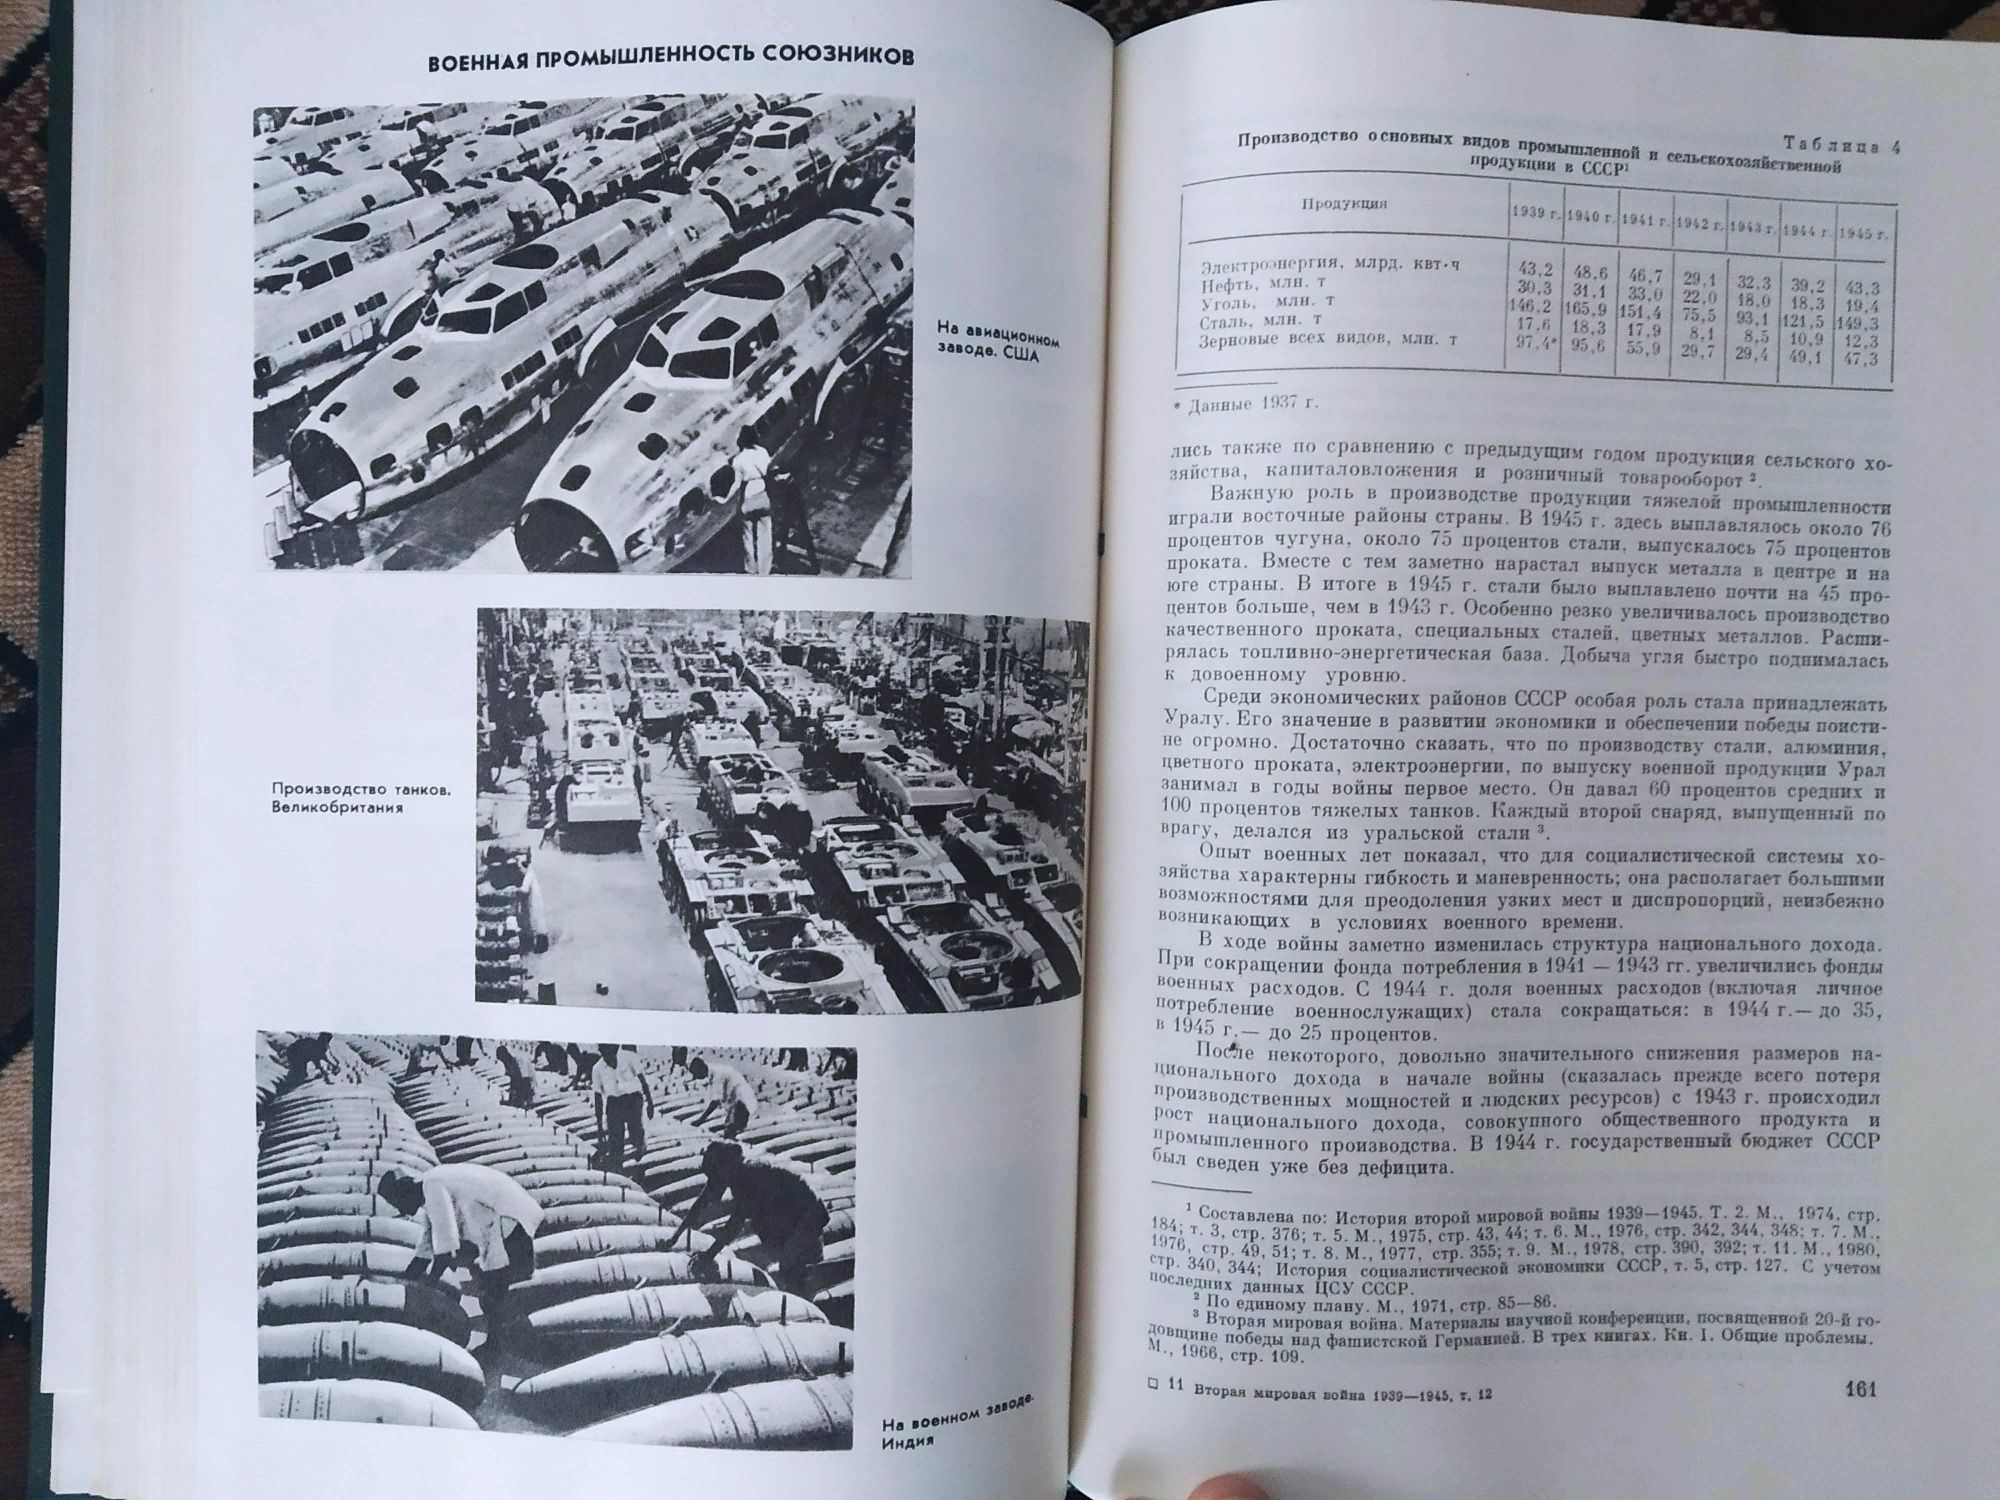 История второй мировой войны 39-45. в 12 томах

Состояние: Хорошее
Год